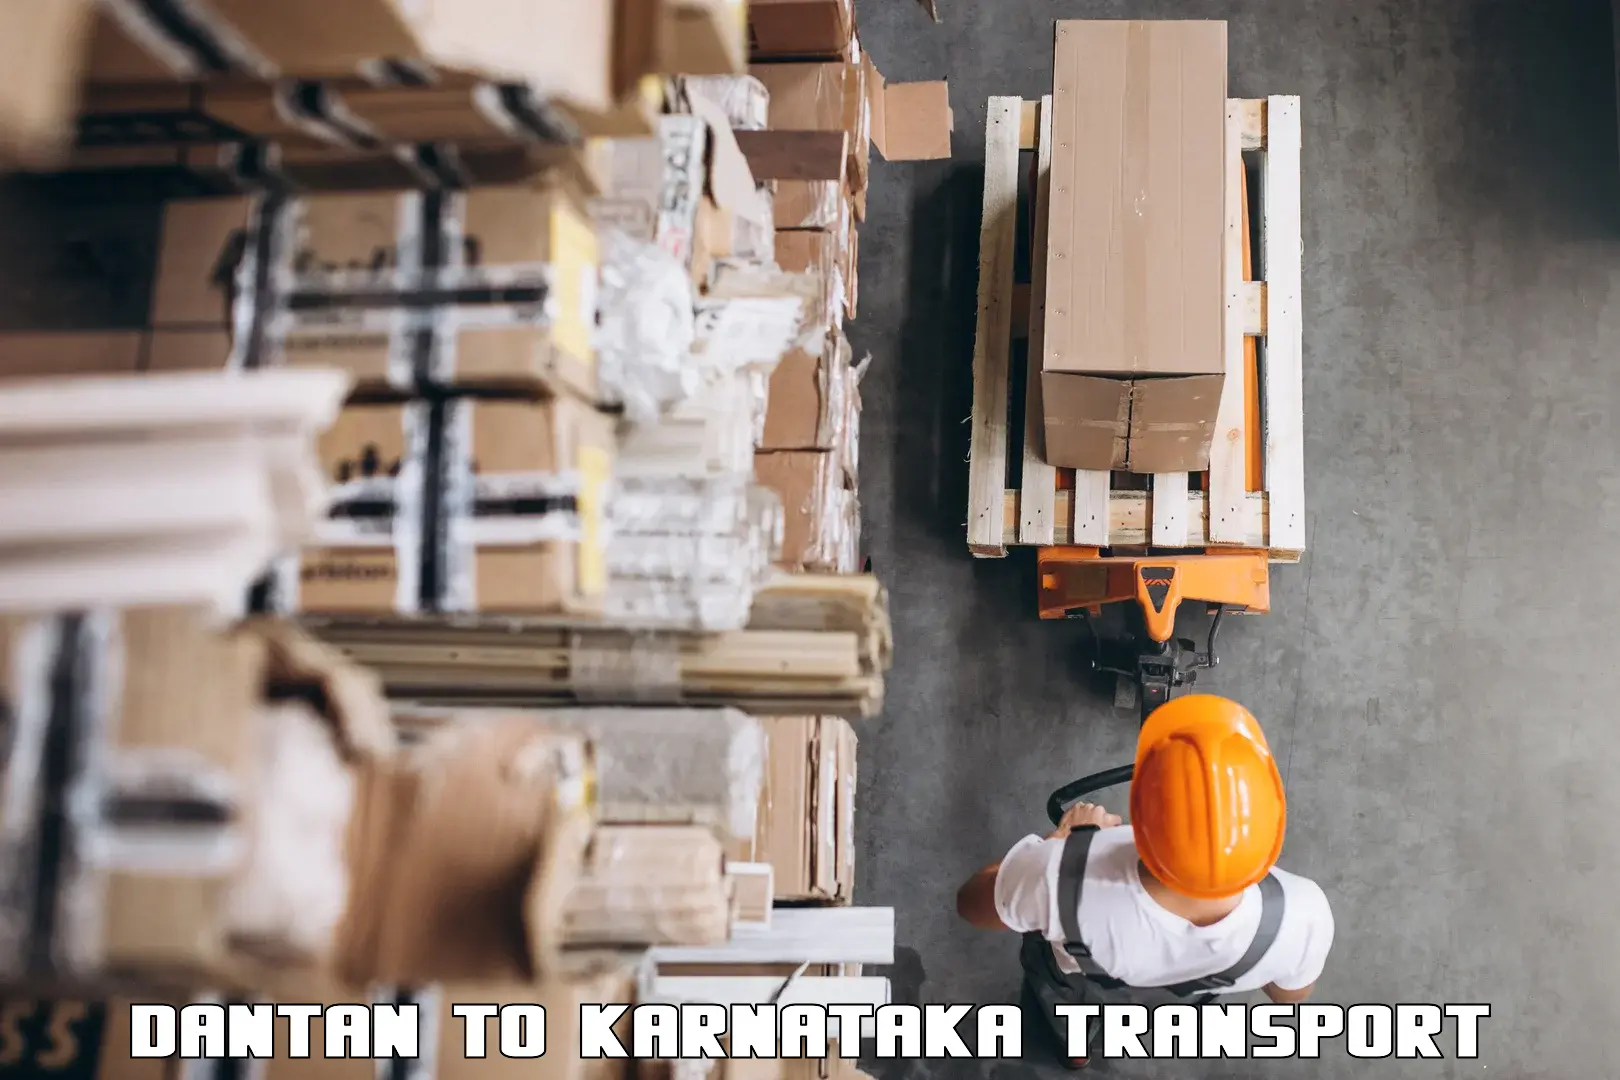 India truck logistics services Dantan to Jagalur